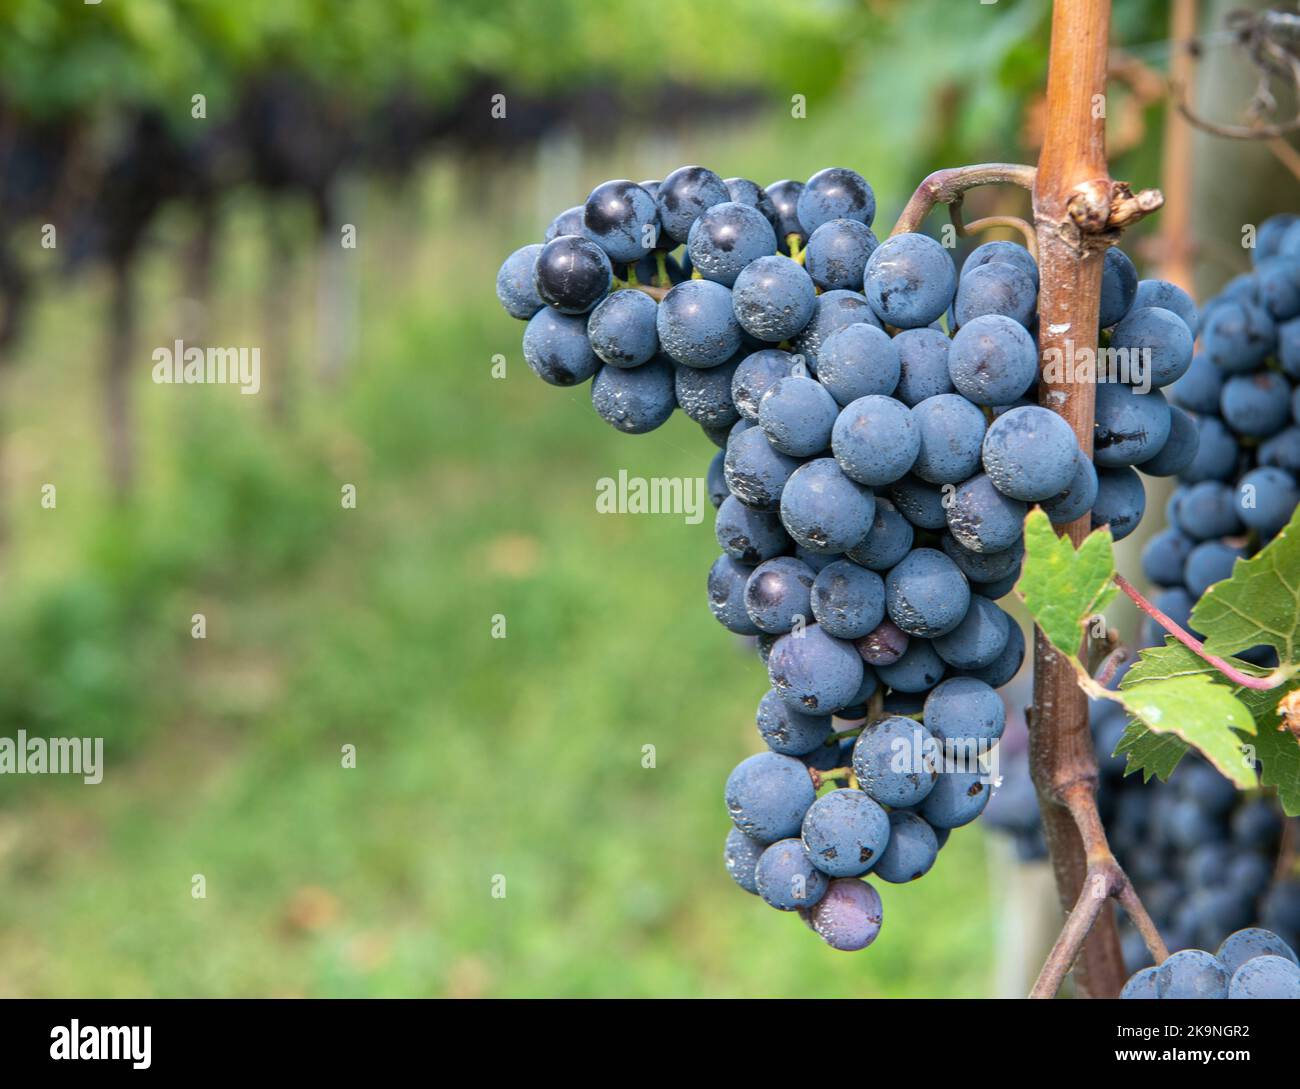 Uva Lagrein. Lagrein è un vitigno di vino rosso originario delle valli dell'Alto Adige, nel nord italia. Guyot Vine Training System - Italia Foto Stock